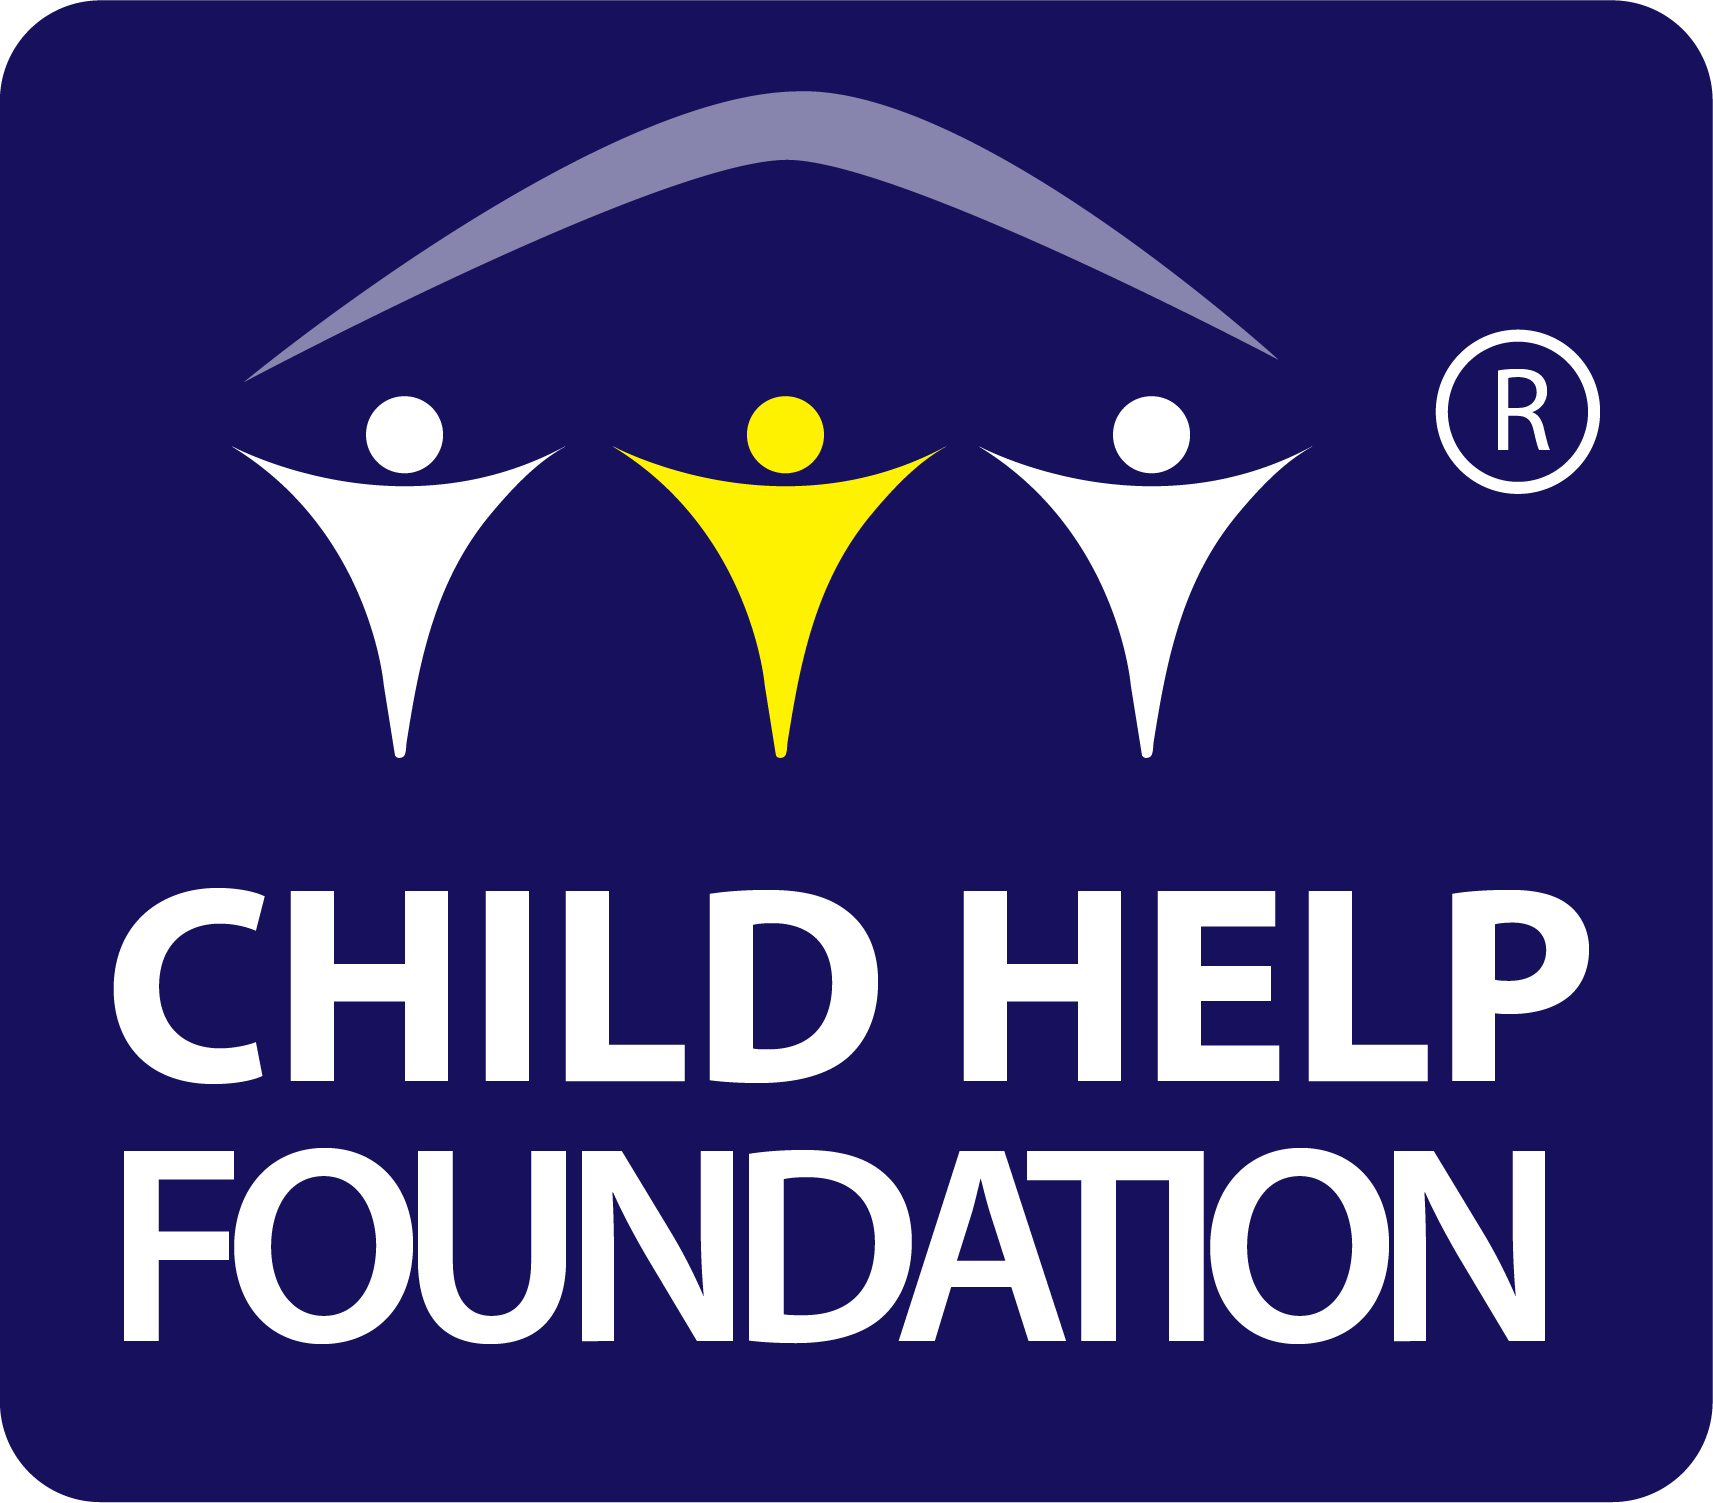 Child help foundation